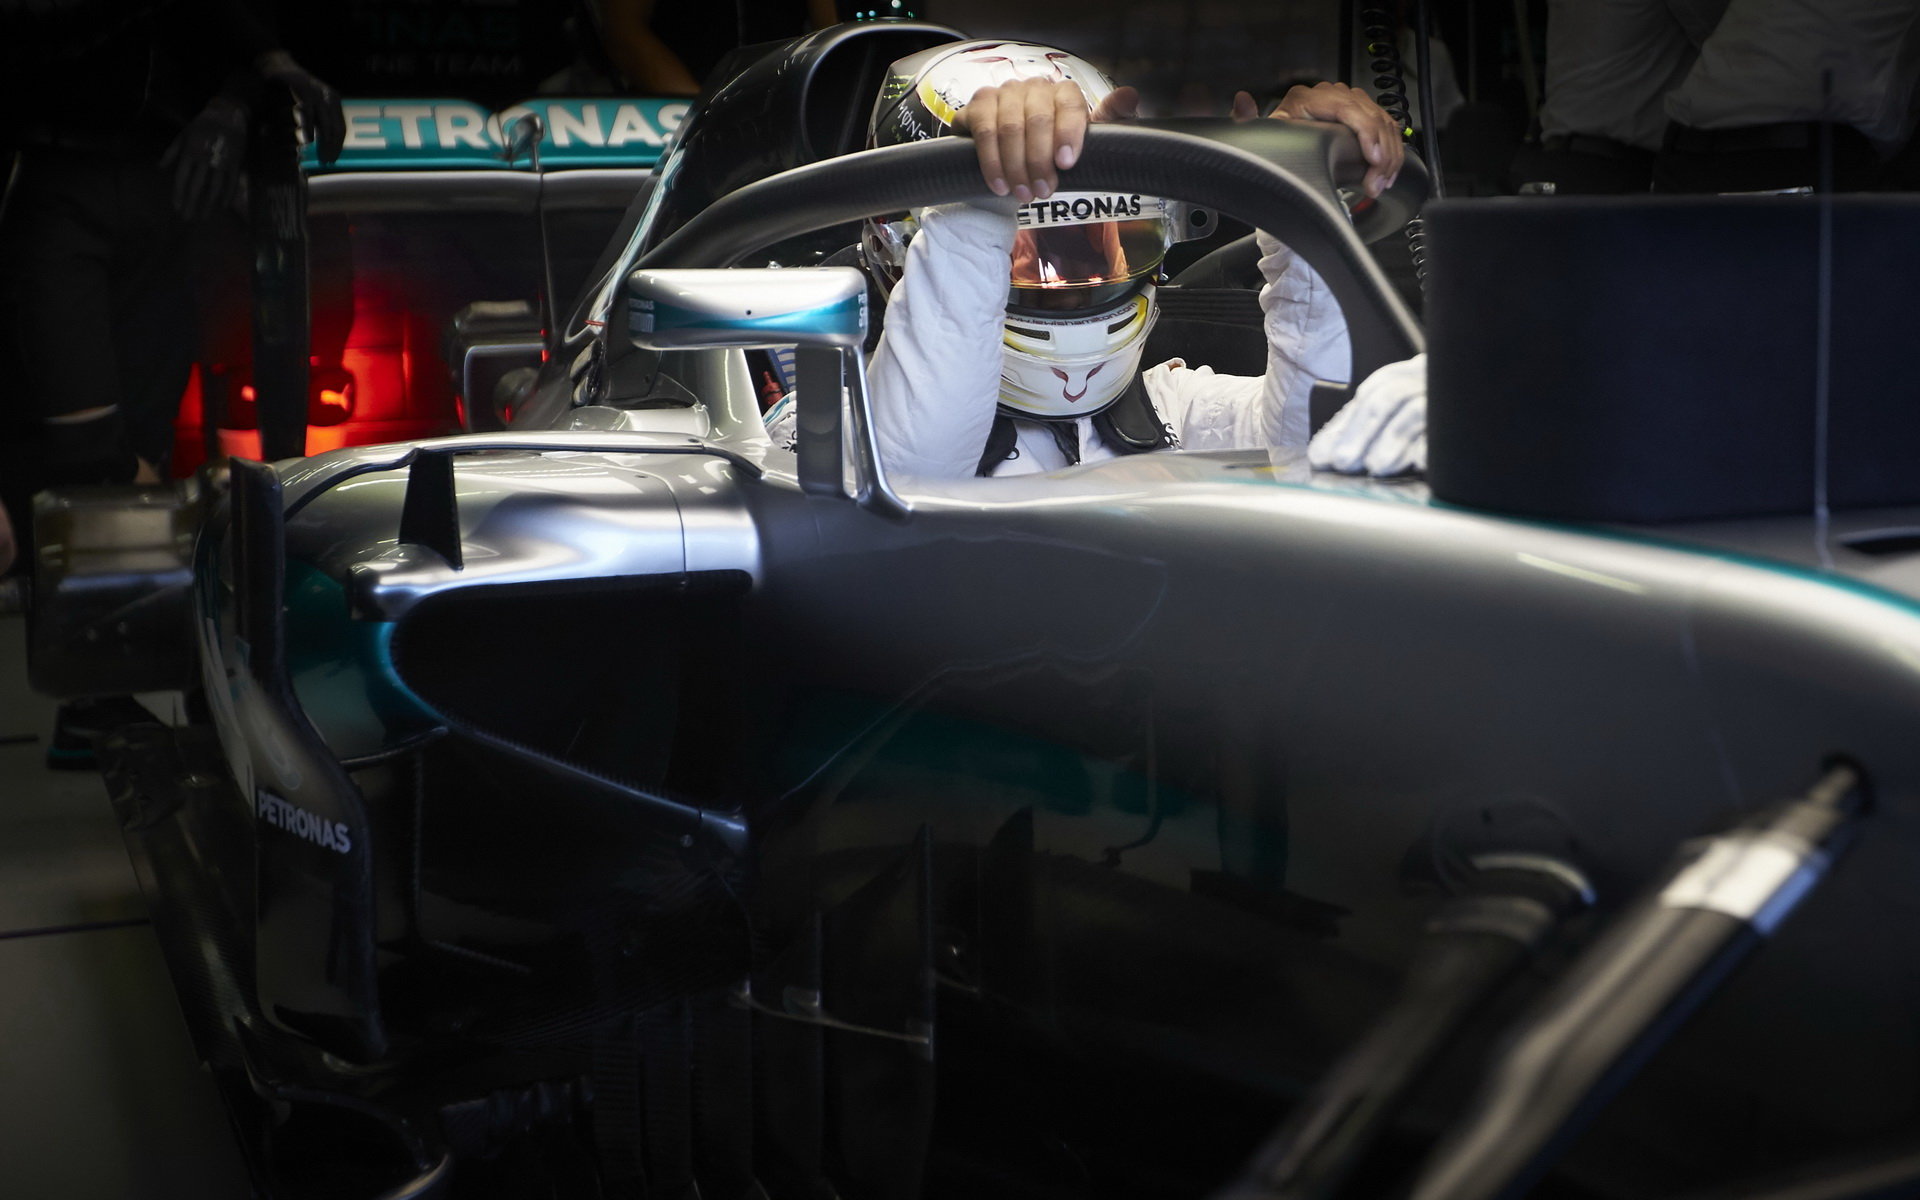 Lewis Hamilton s halo konceptem při pátečním tréninku v Singapuru